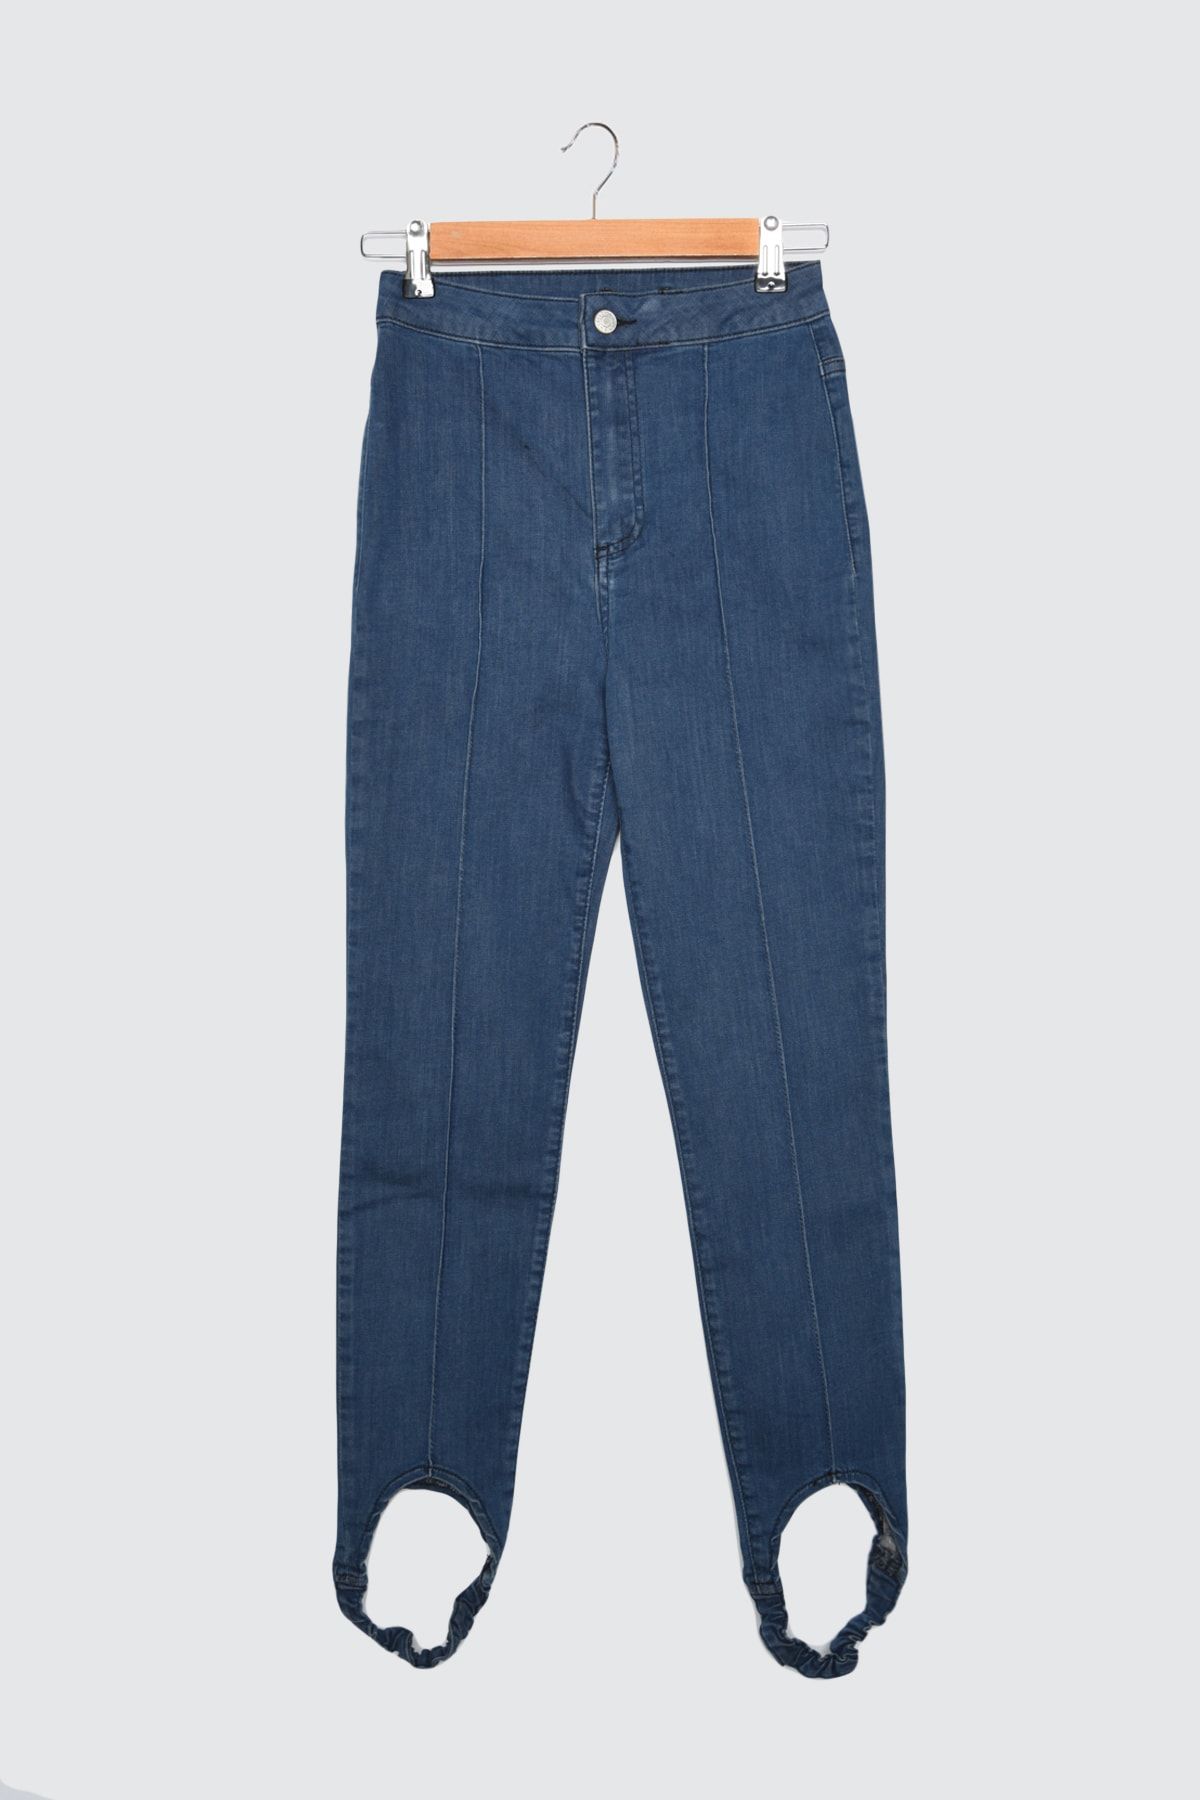 TRENDYOLMİLLA Lacivert Paça Lastikli Yüksek Bel Skinny Jeans TWOAW21JE0545